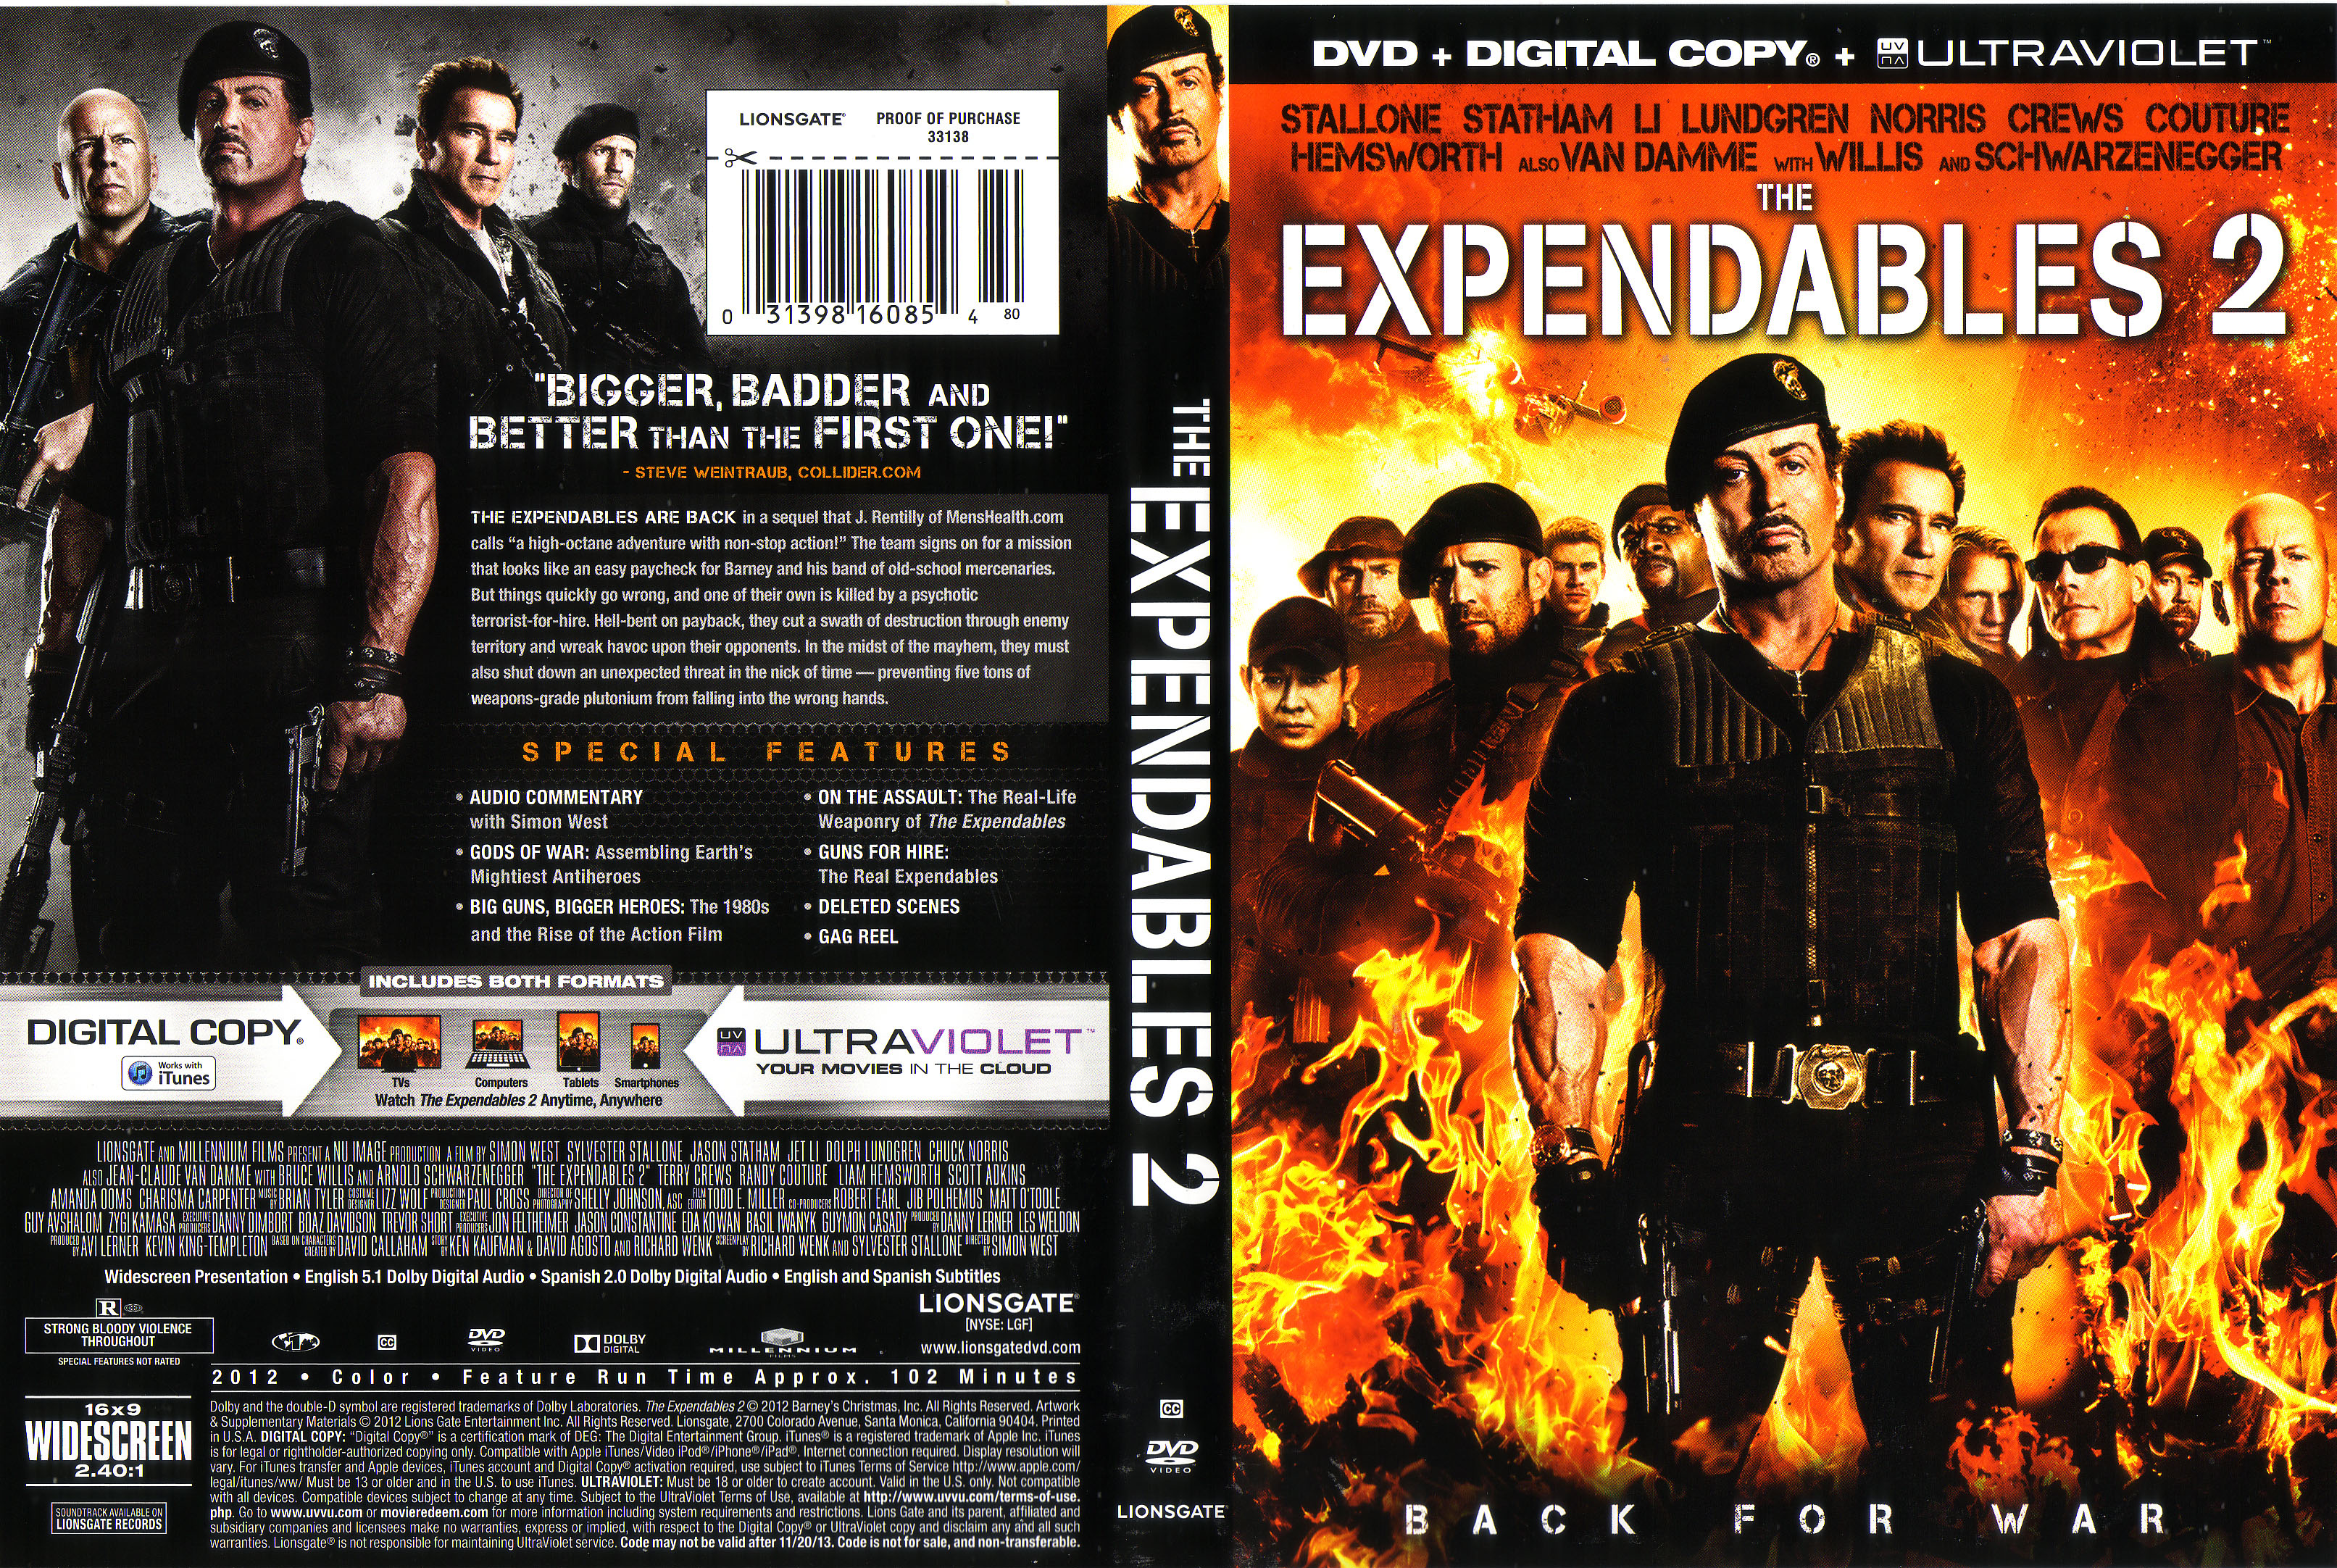 Неудержимый том 12 читать. The Expendables 2, 2012 DVD Cover. Чак Норрис Неудержимые 2. Неудержимые 2 2012 обложка диска DVD. Expendables DVD Cover.